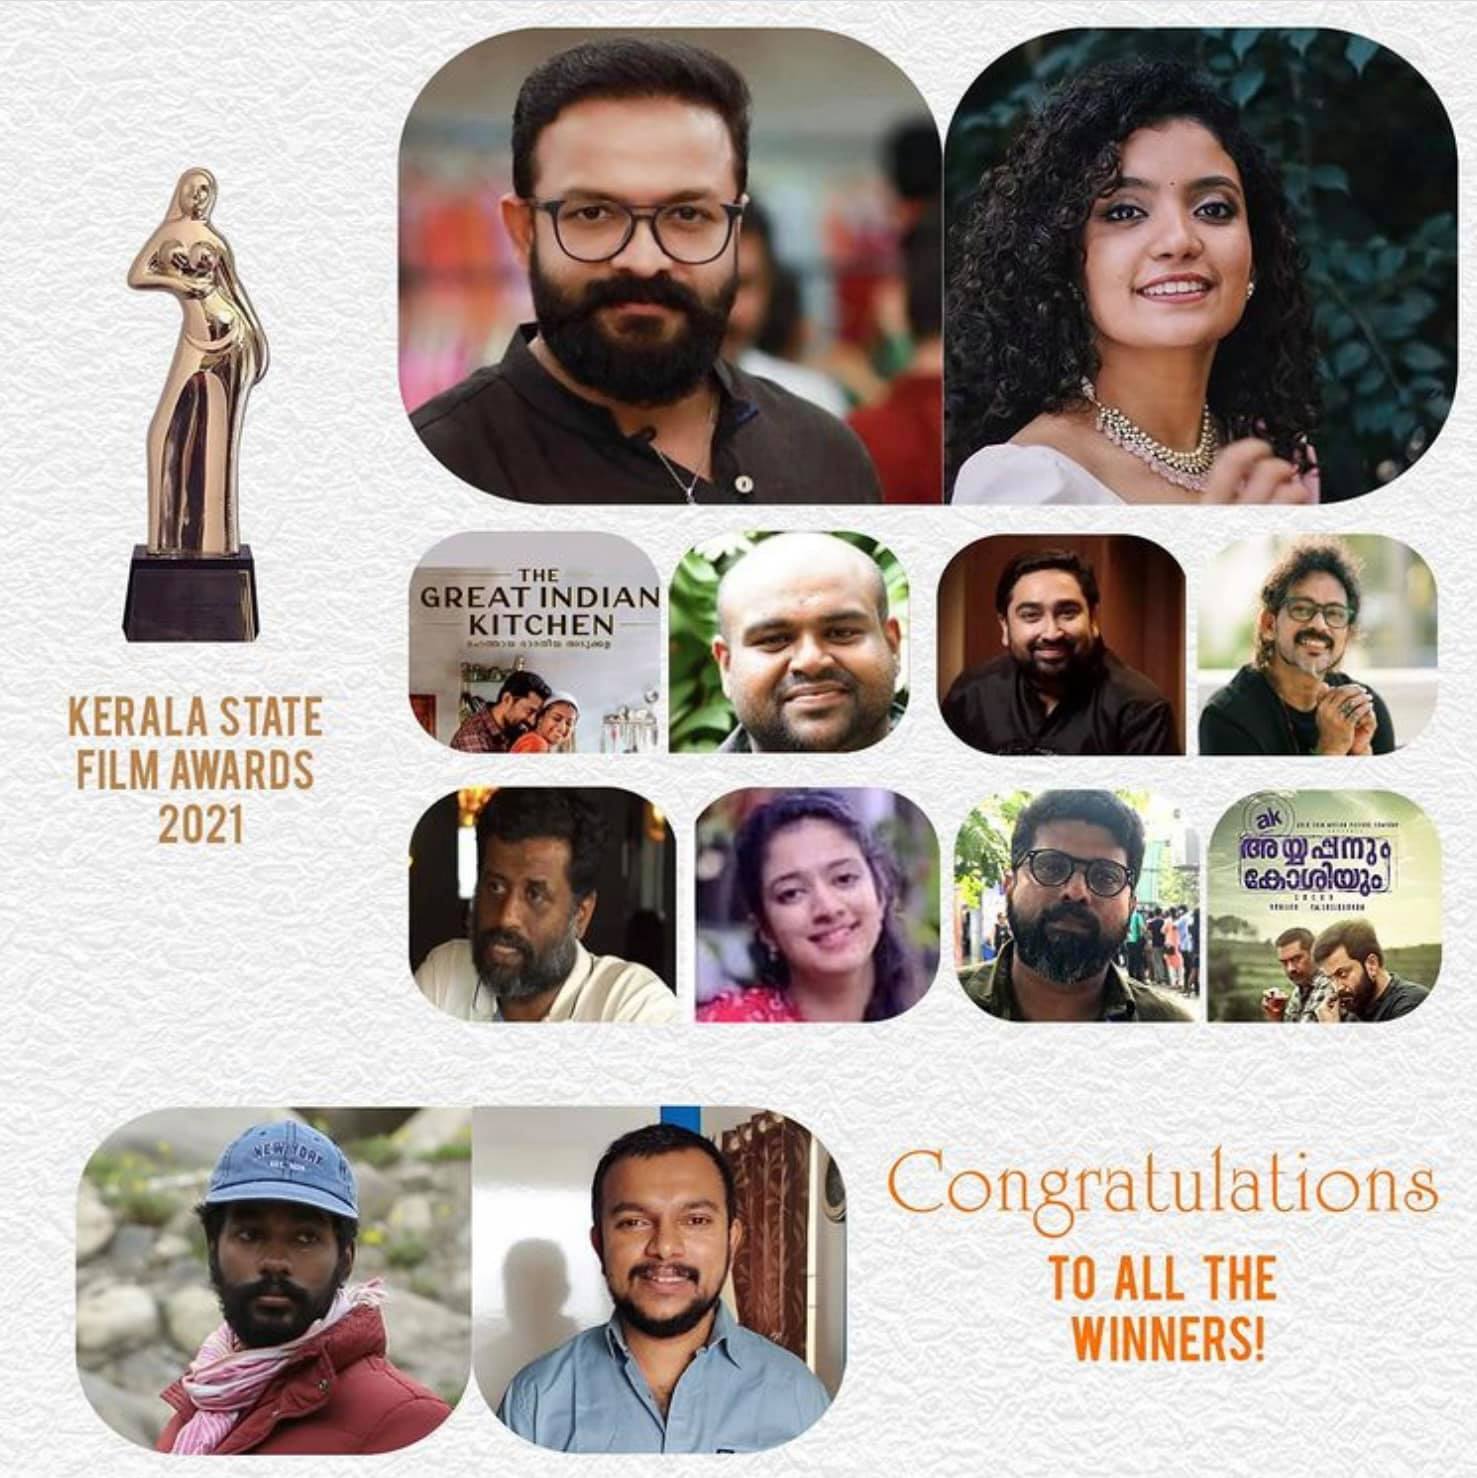 2020-ம் ஆண்டிற்கான கேரள அரசின் திரைப்பட விருதுகள் அறிவிப்பு